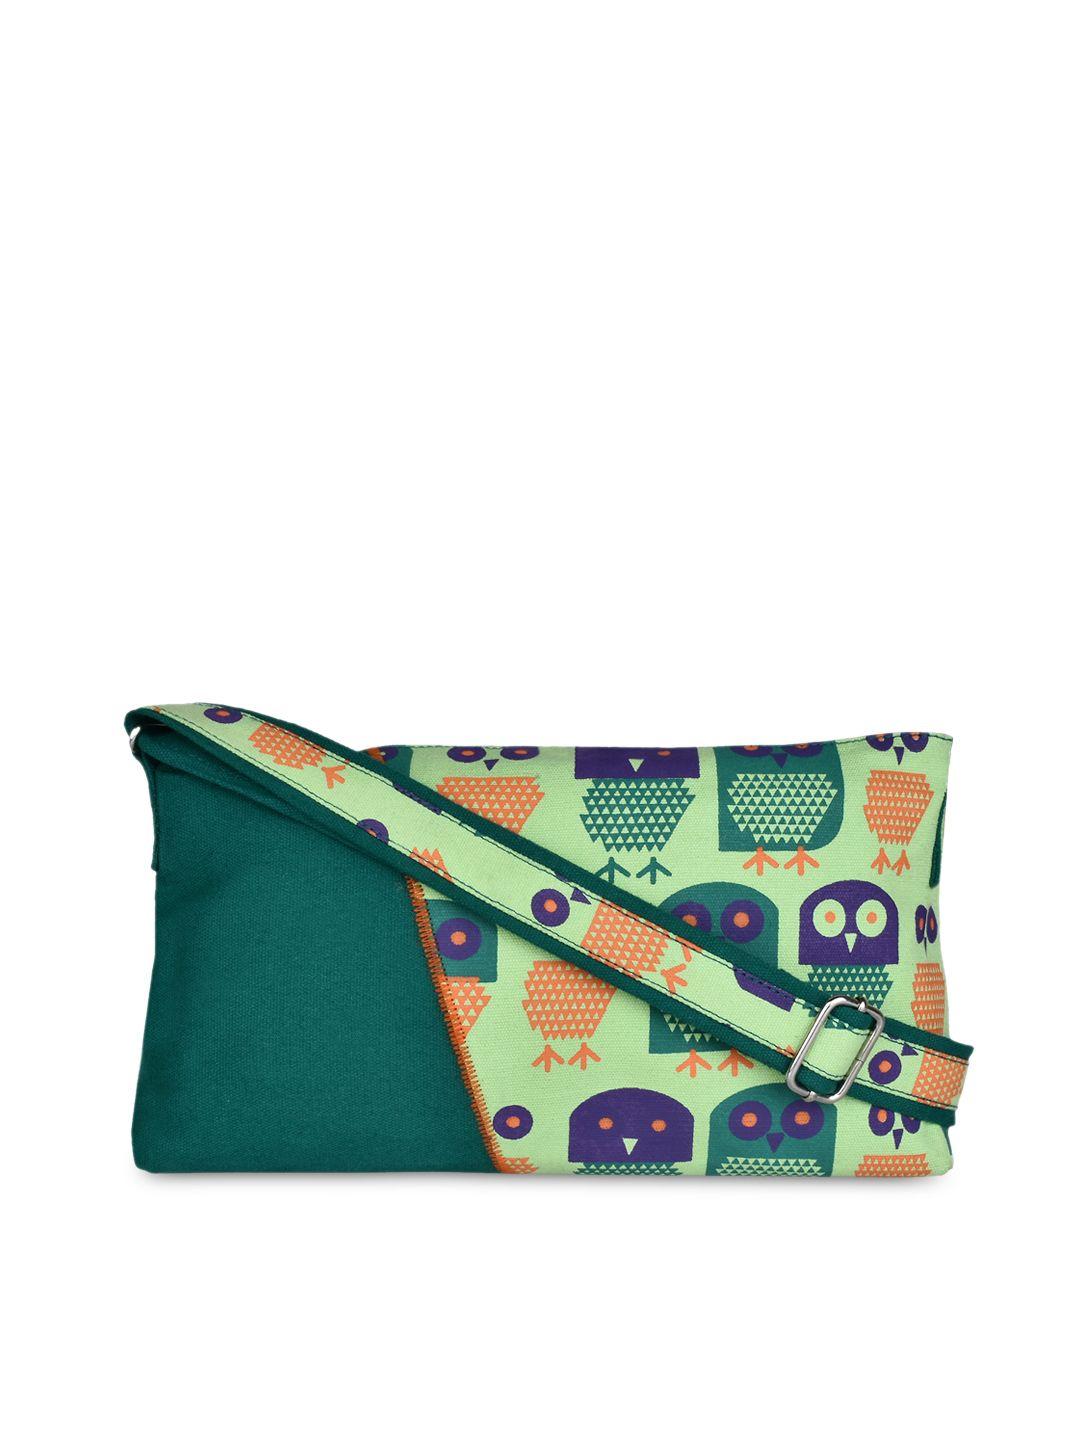 anekaant teal green strix printed sling bag